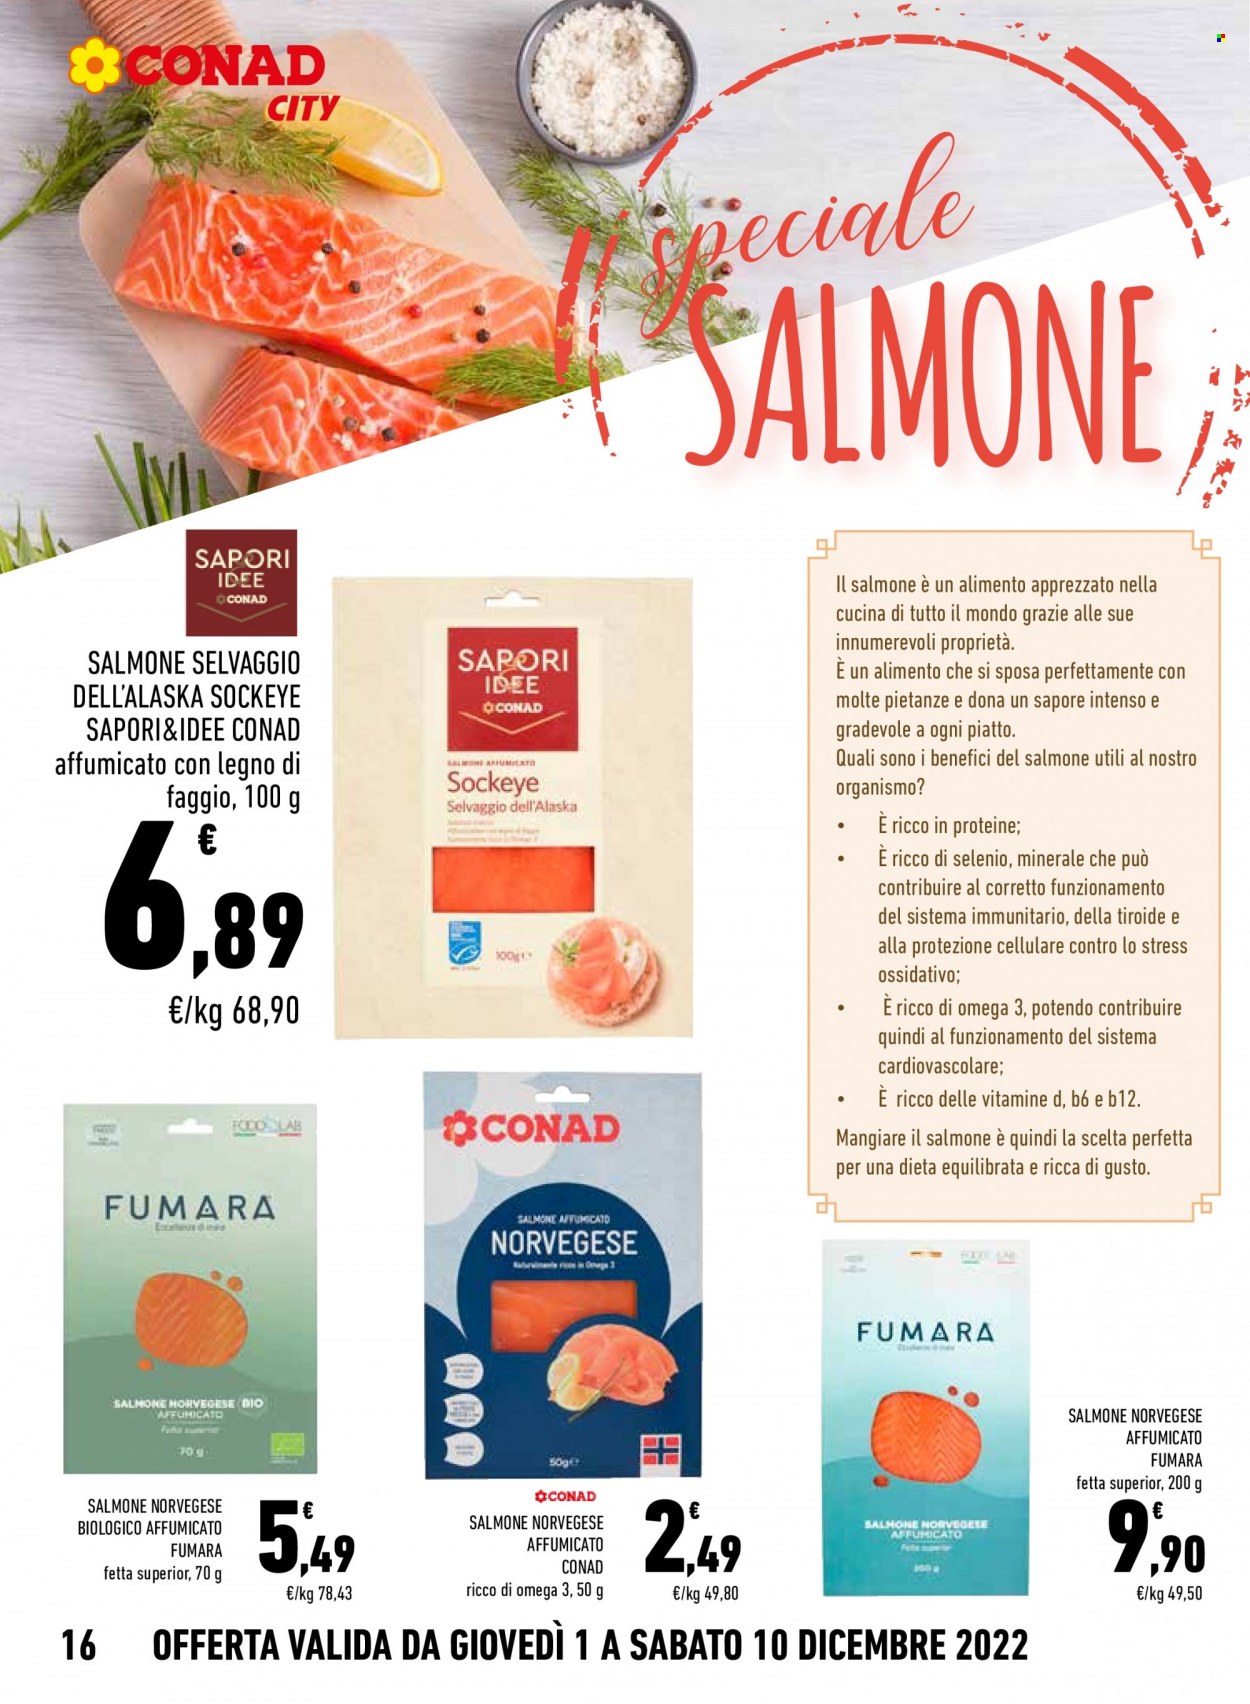 thumbnail - Volantino Conad - 1/12/2022 - 10/12/2022 - Prodotti in offerta - salmone affumicato, salmone norvegese affumicato, cellulare. Pagina 16.